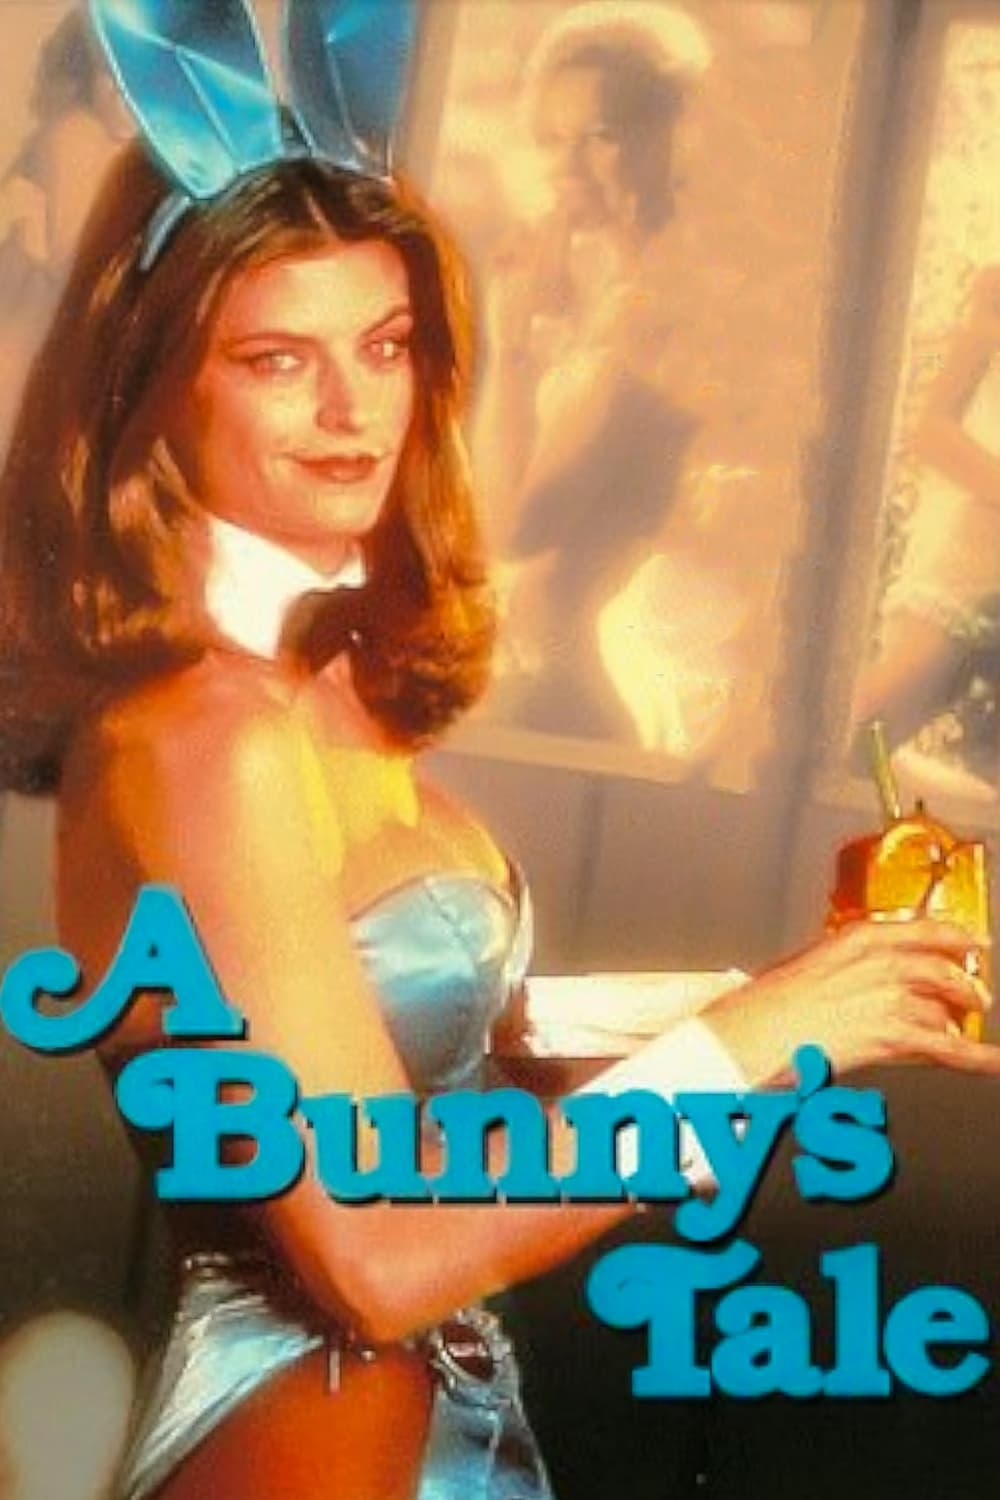 Mein Leben als Bunny (1985)